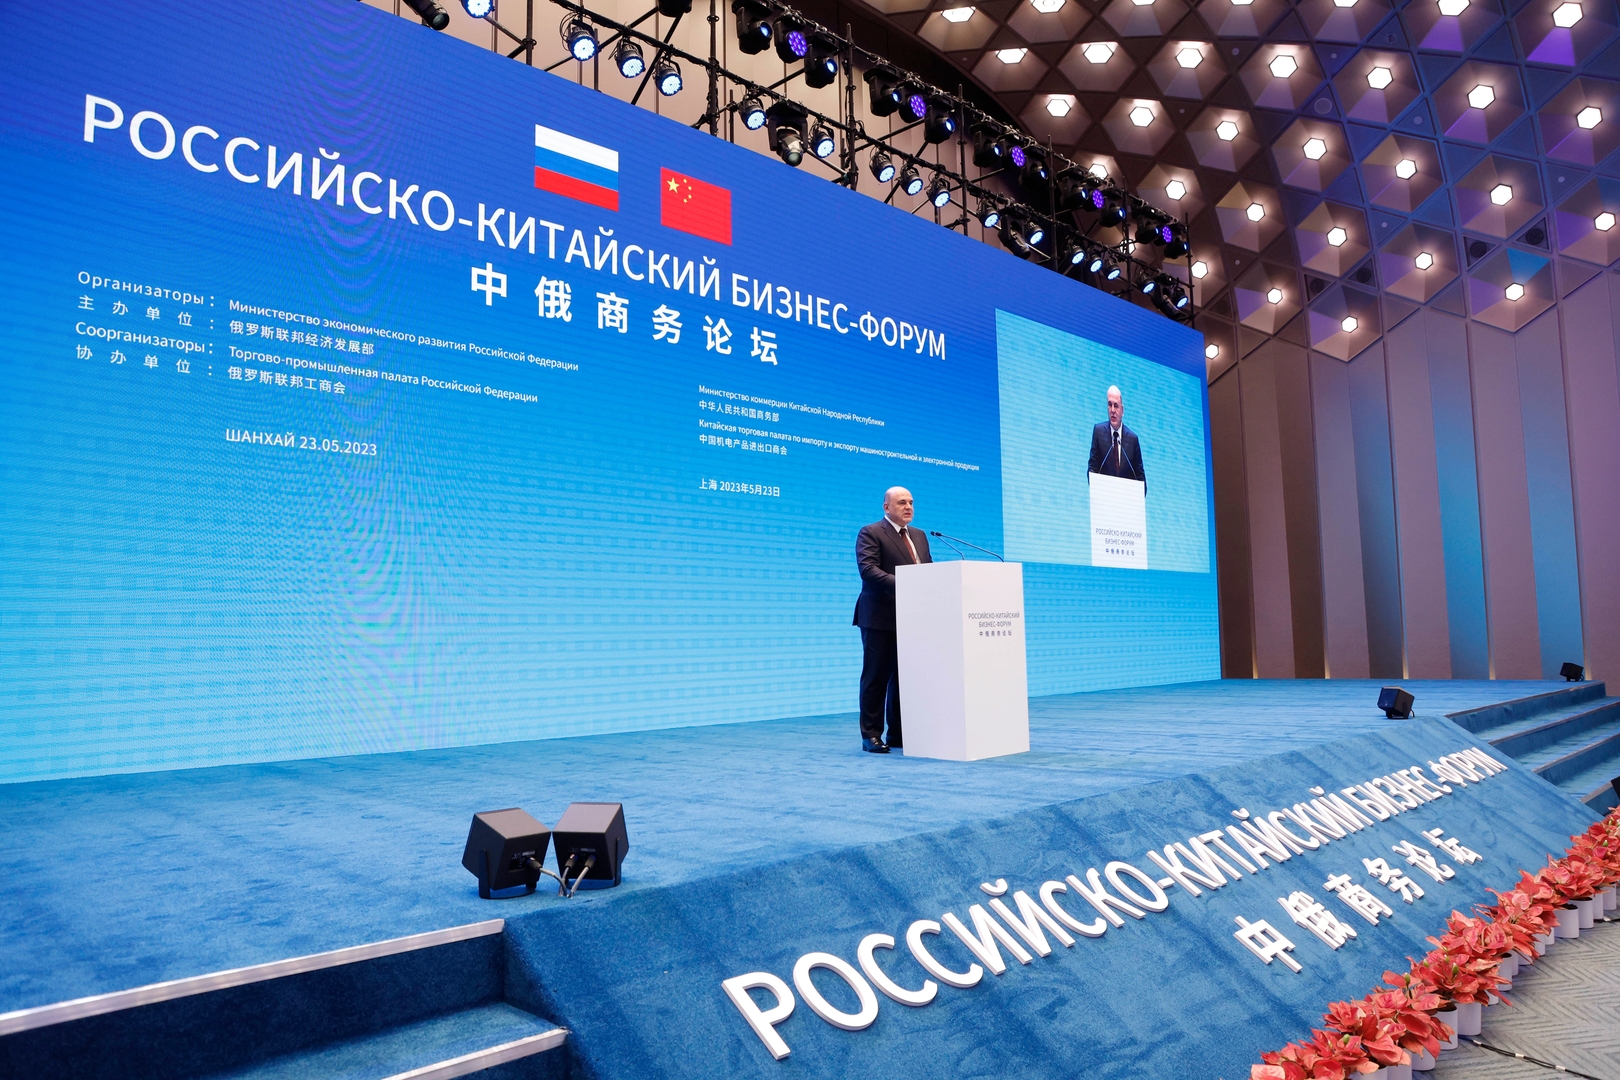 من الزراعة إلى التقنيات العالية.. ميشوستين يحدد مجالات التعاون الواعدة بين روسيا والصين